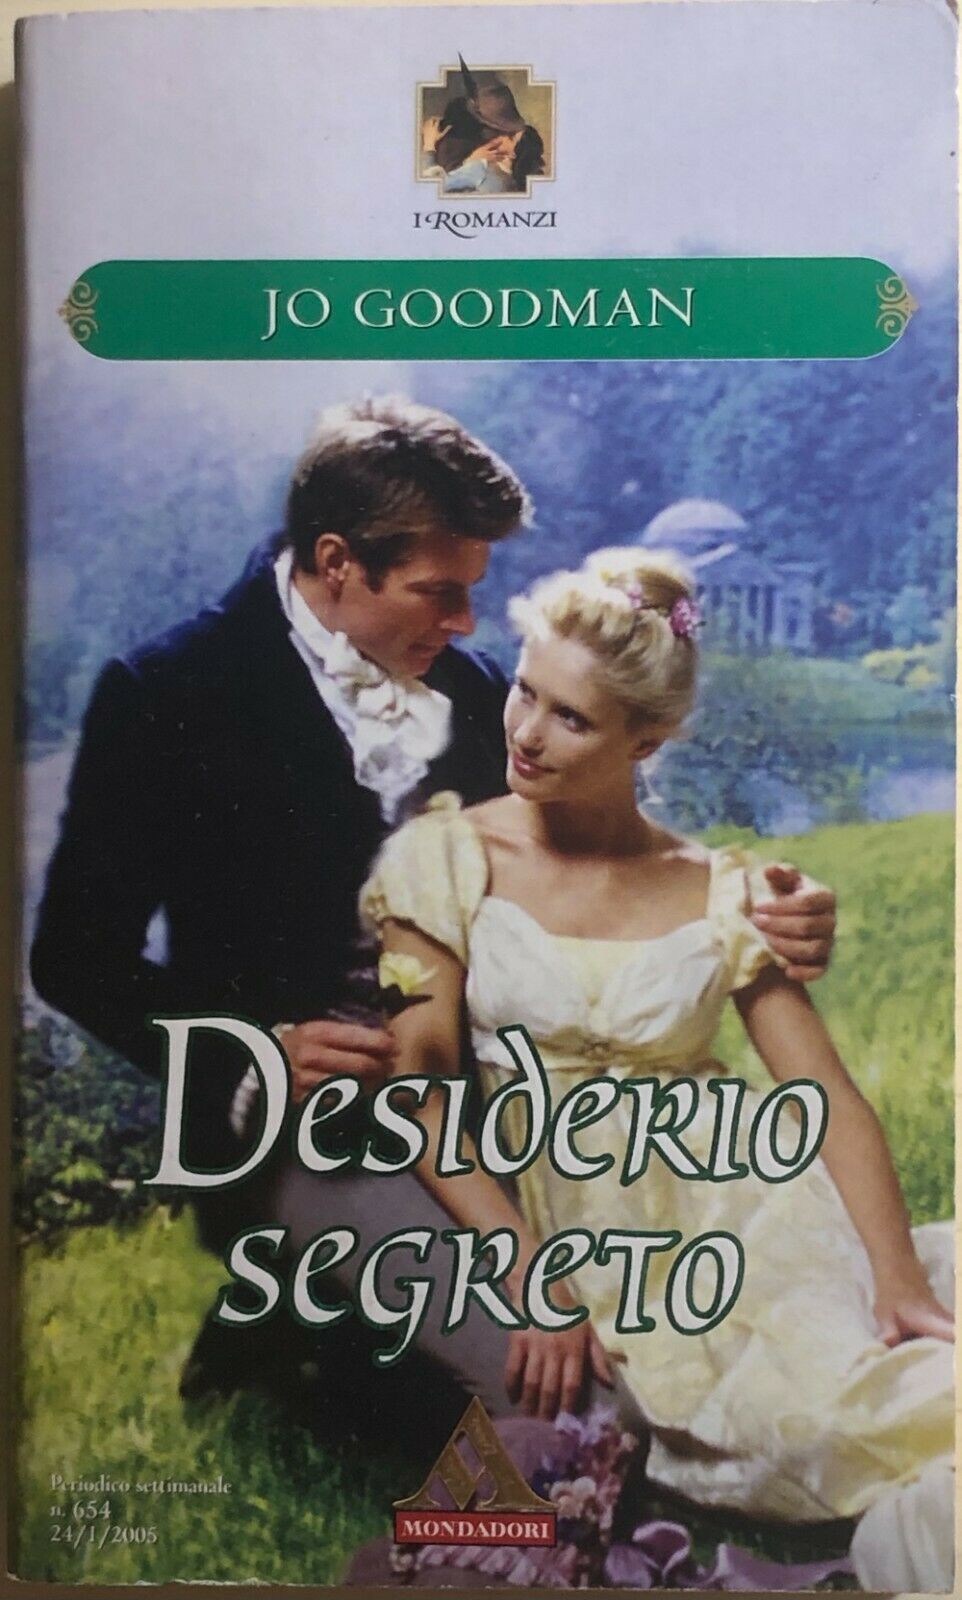 Desiderio segreto di Jo Goodman, 2005, Mondadori